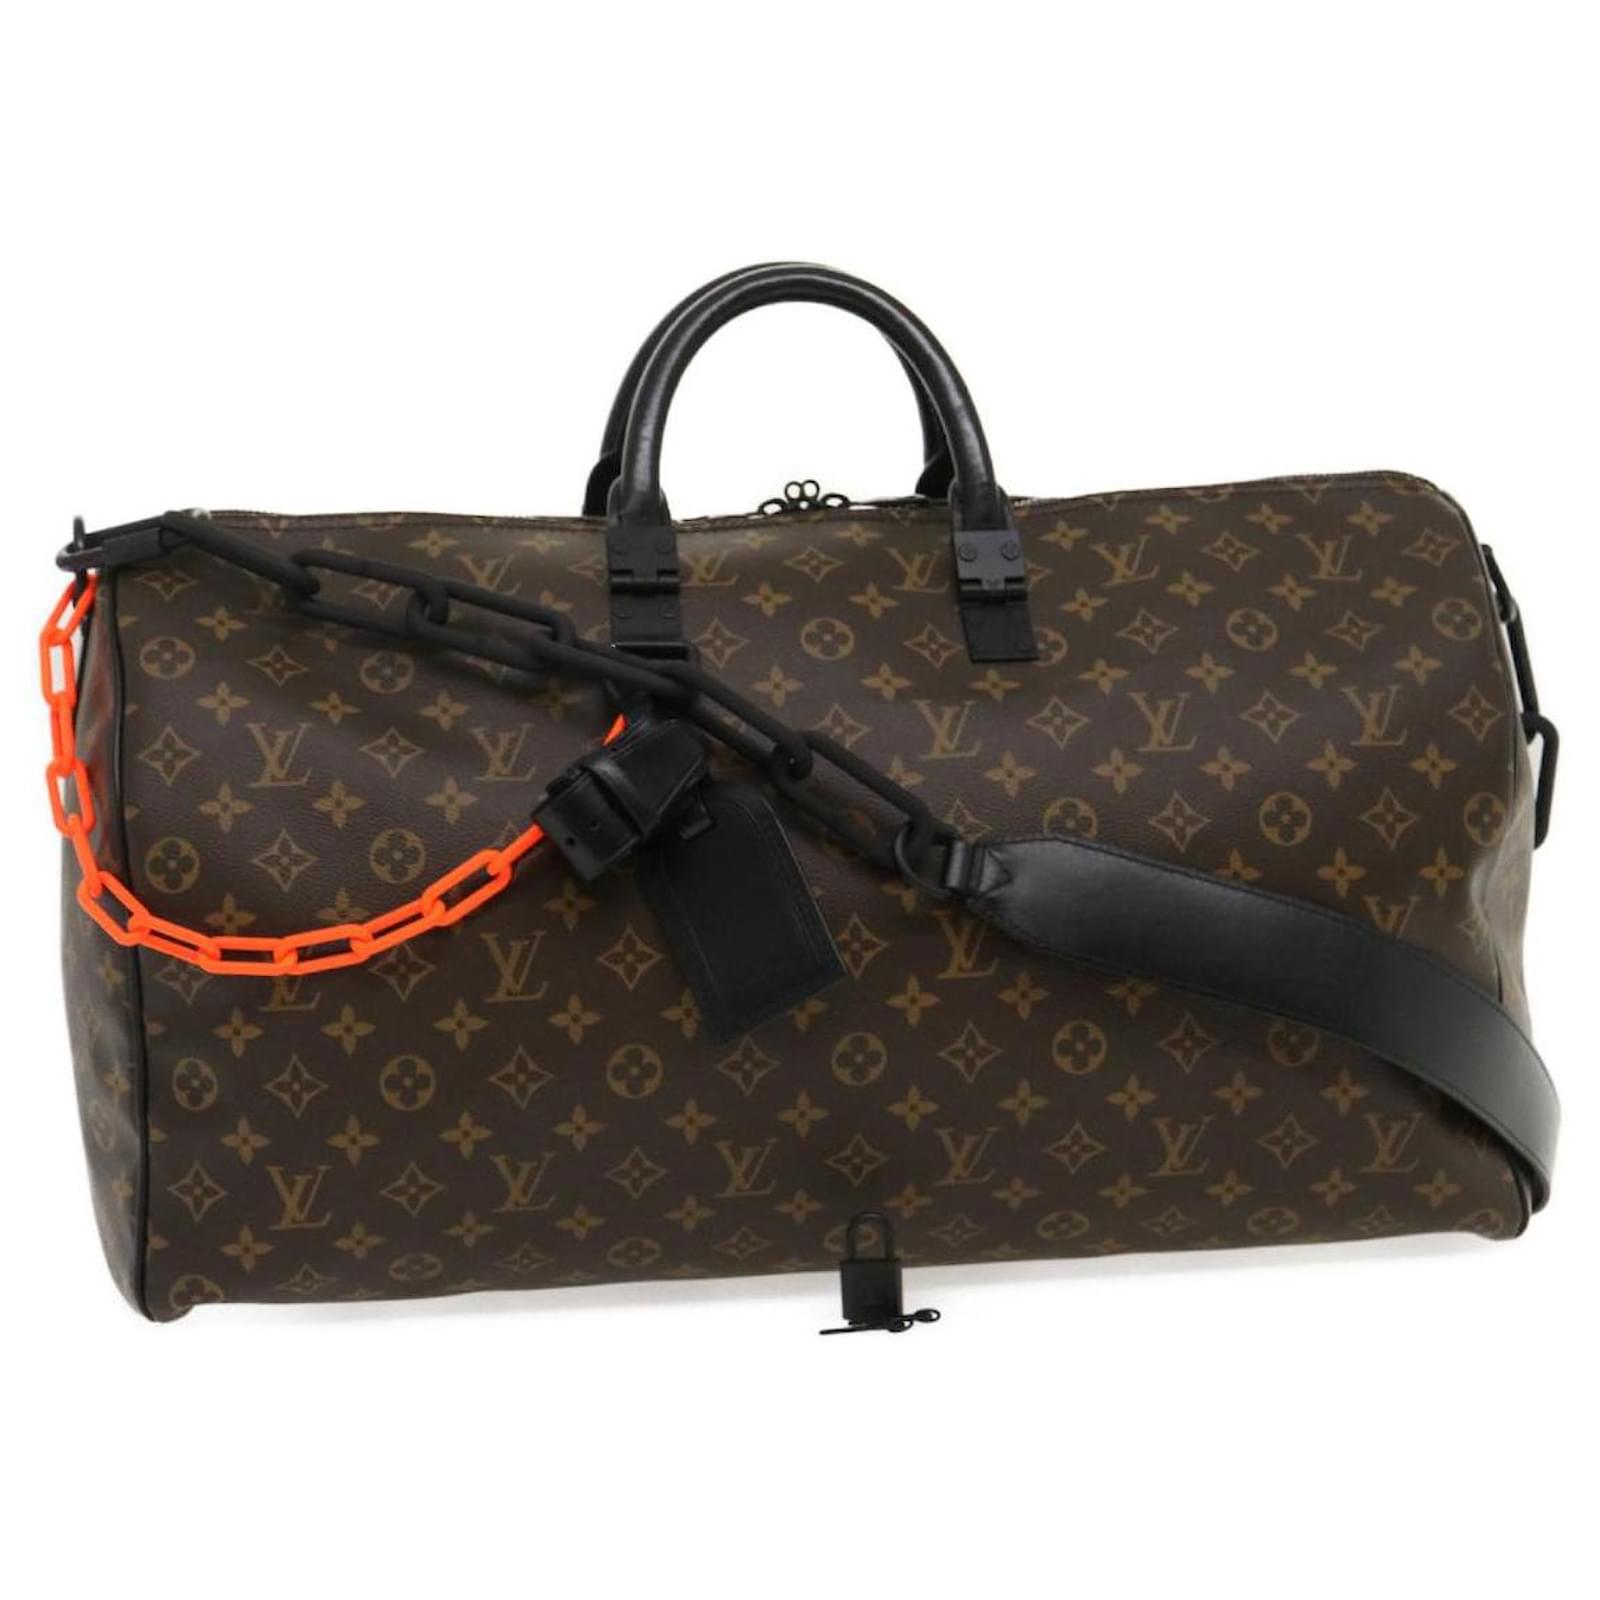 Louis Vuitton Keepall 50 Virgil Abloh Boston Bag Prism M53271